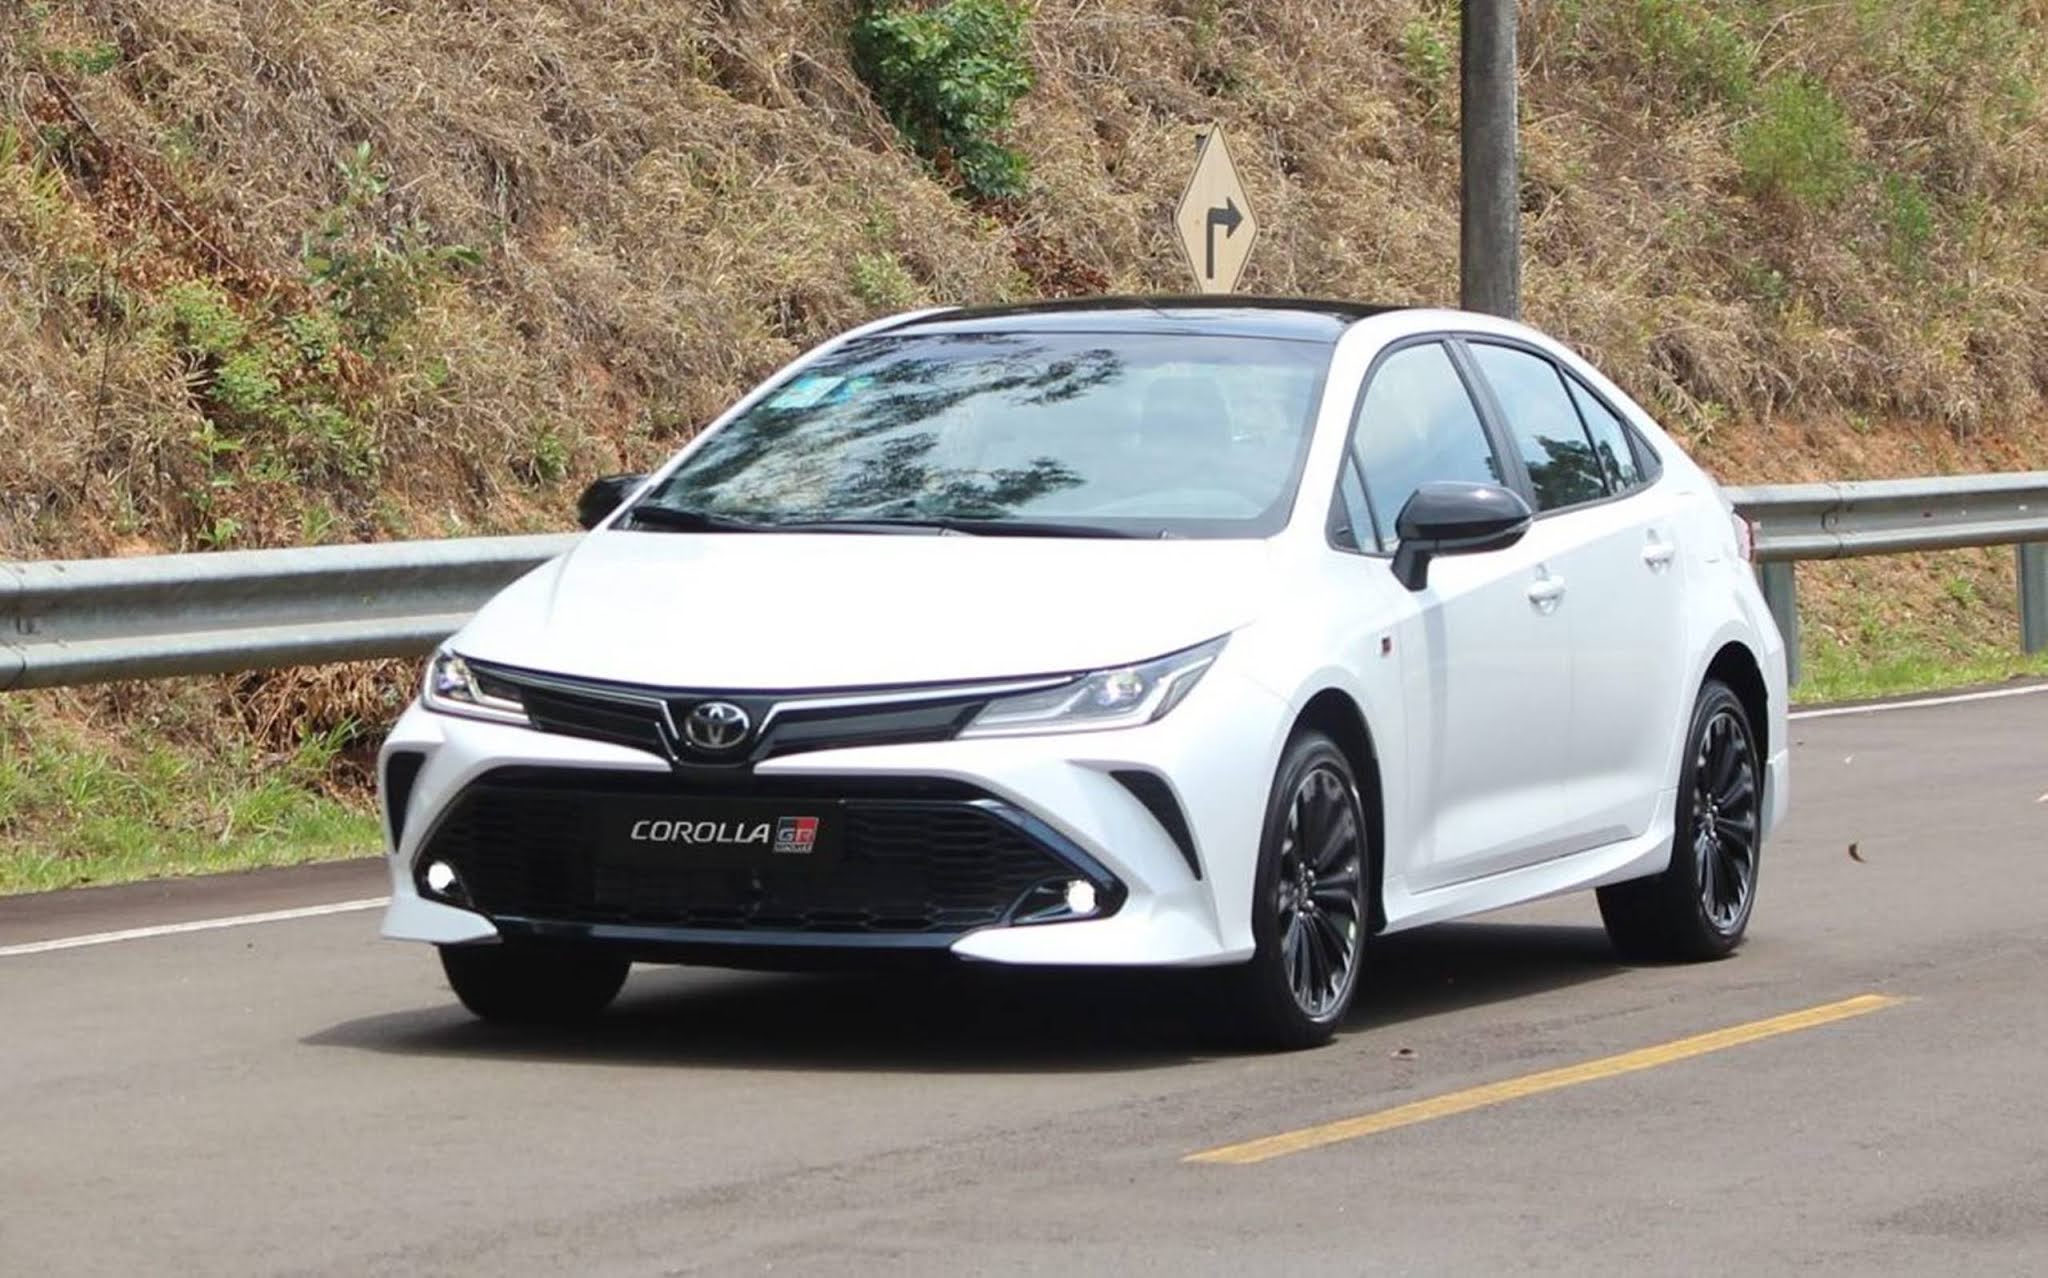 Toyota Corolla GR-S 2021 chega ao mercado - preço R$ 151.990 - fotos ...